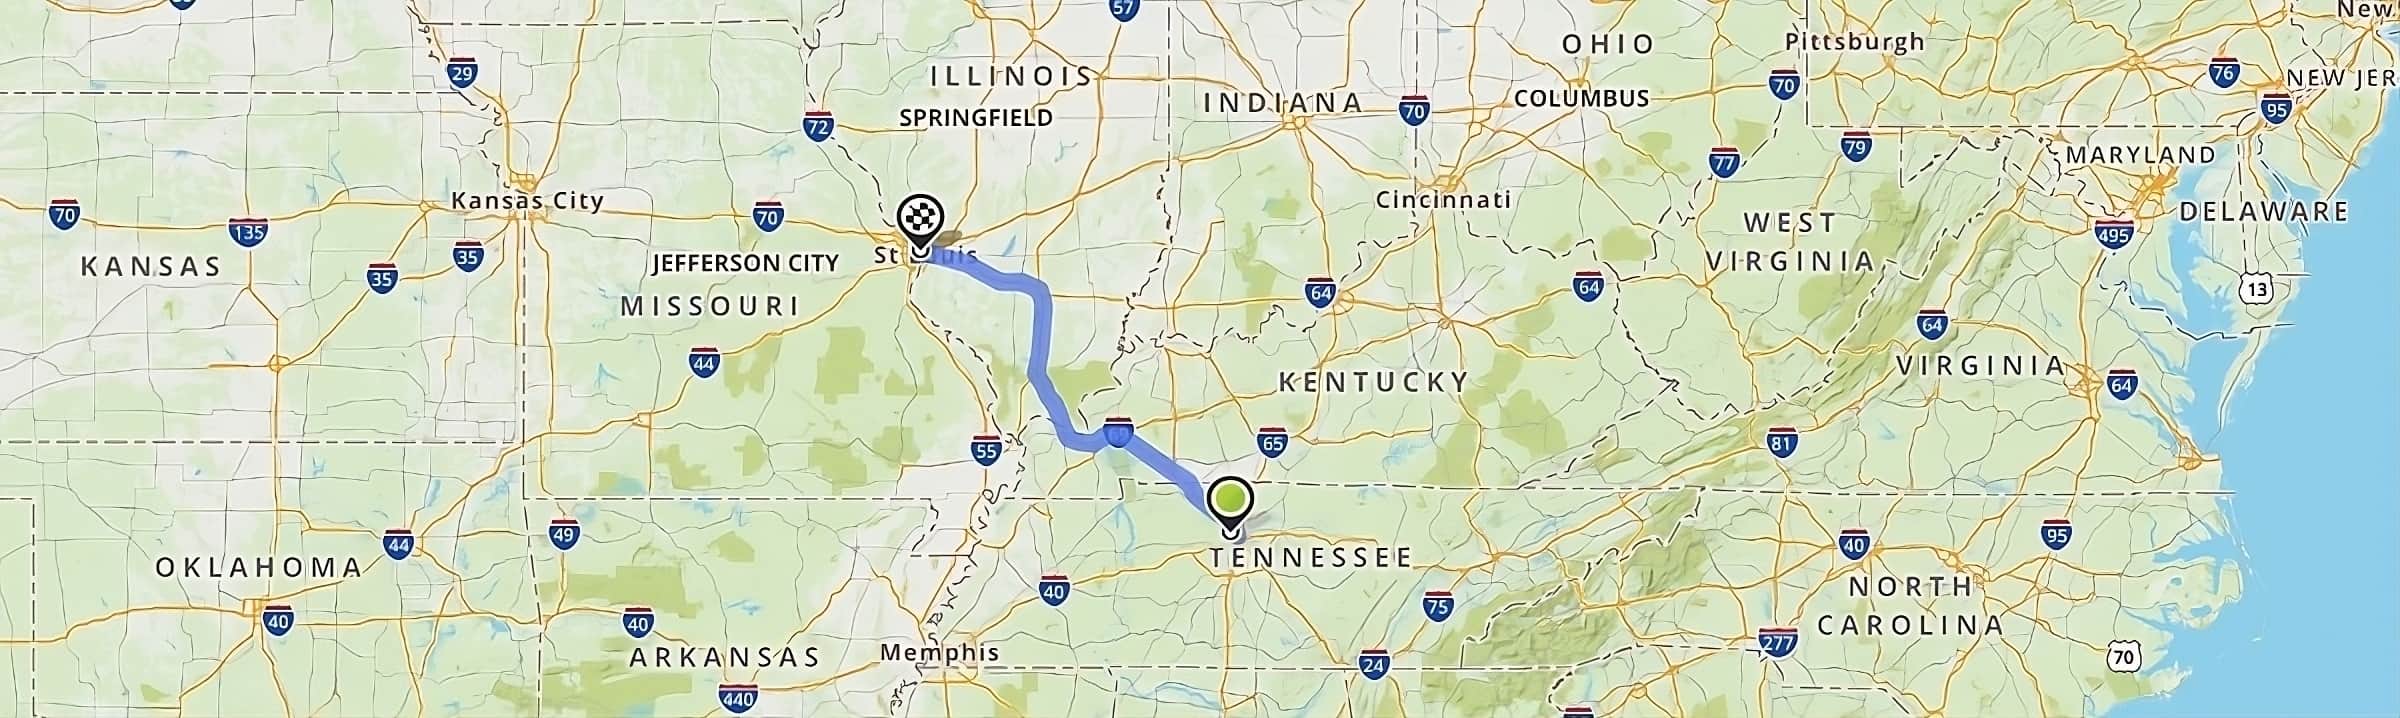 trasa na mapie z Nashville do Saint Louis podróż przez Stany Zjednoczone-stany USA-Tennessee Kentucky Illinois Missouri